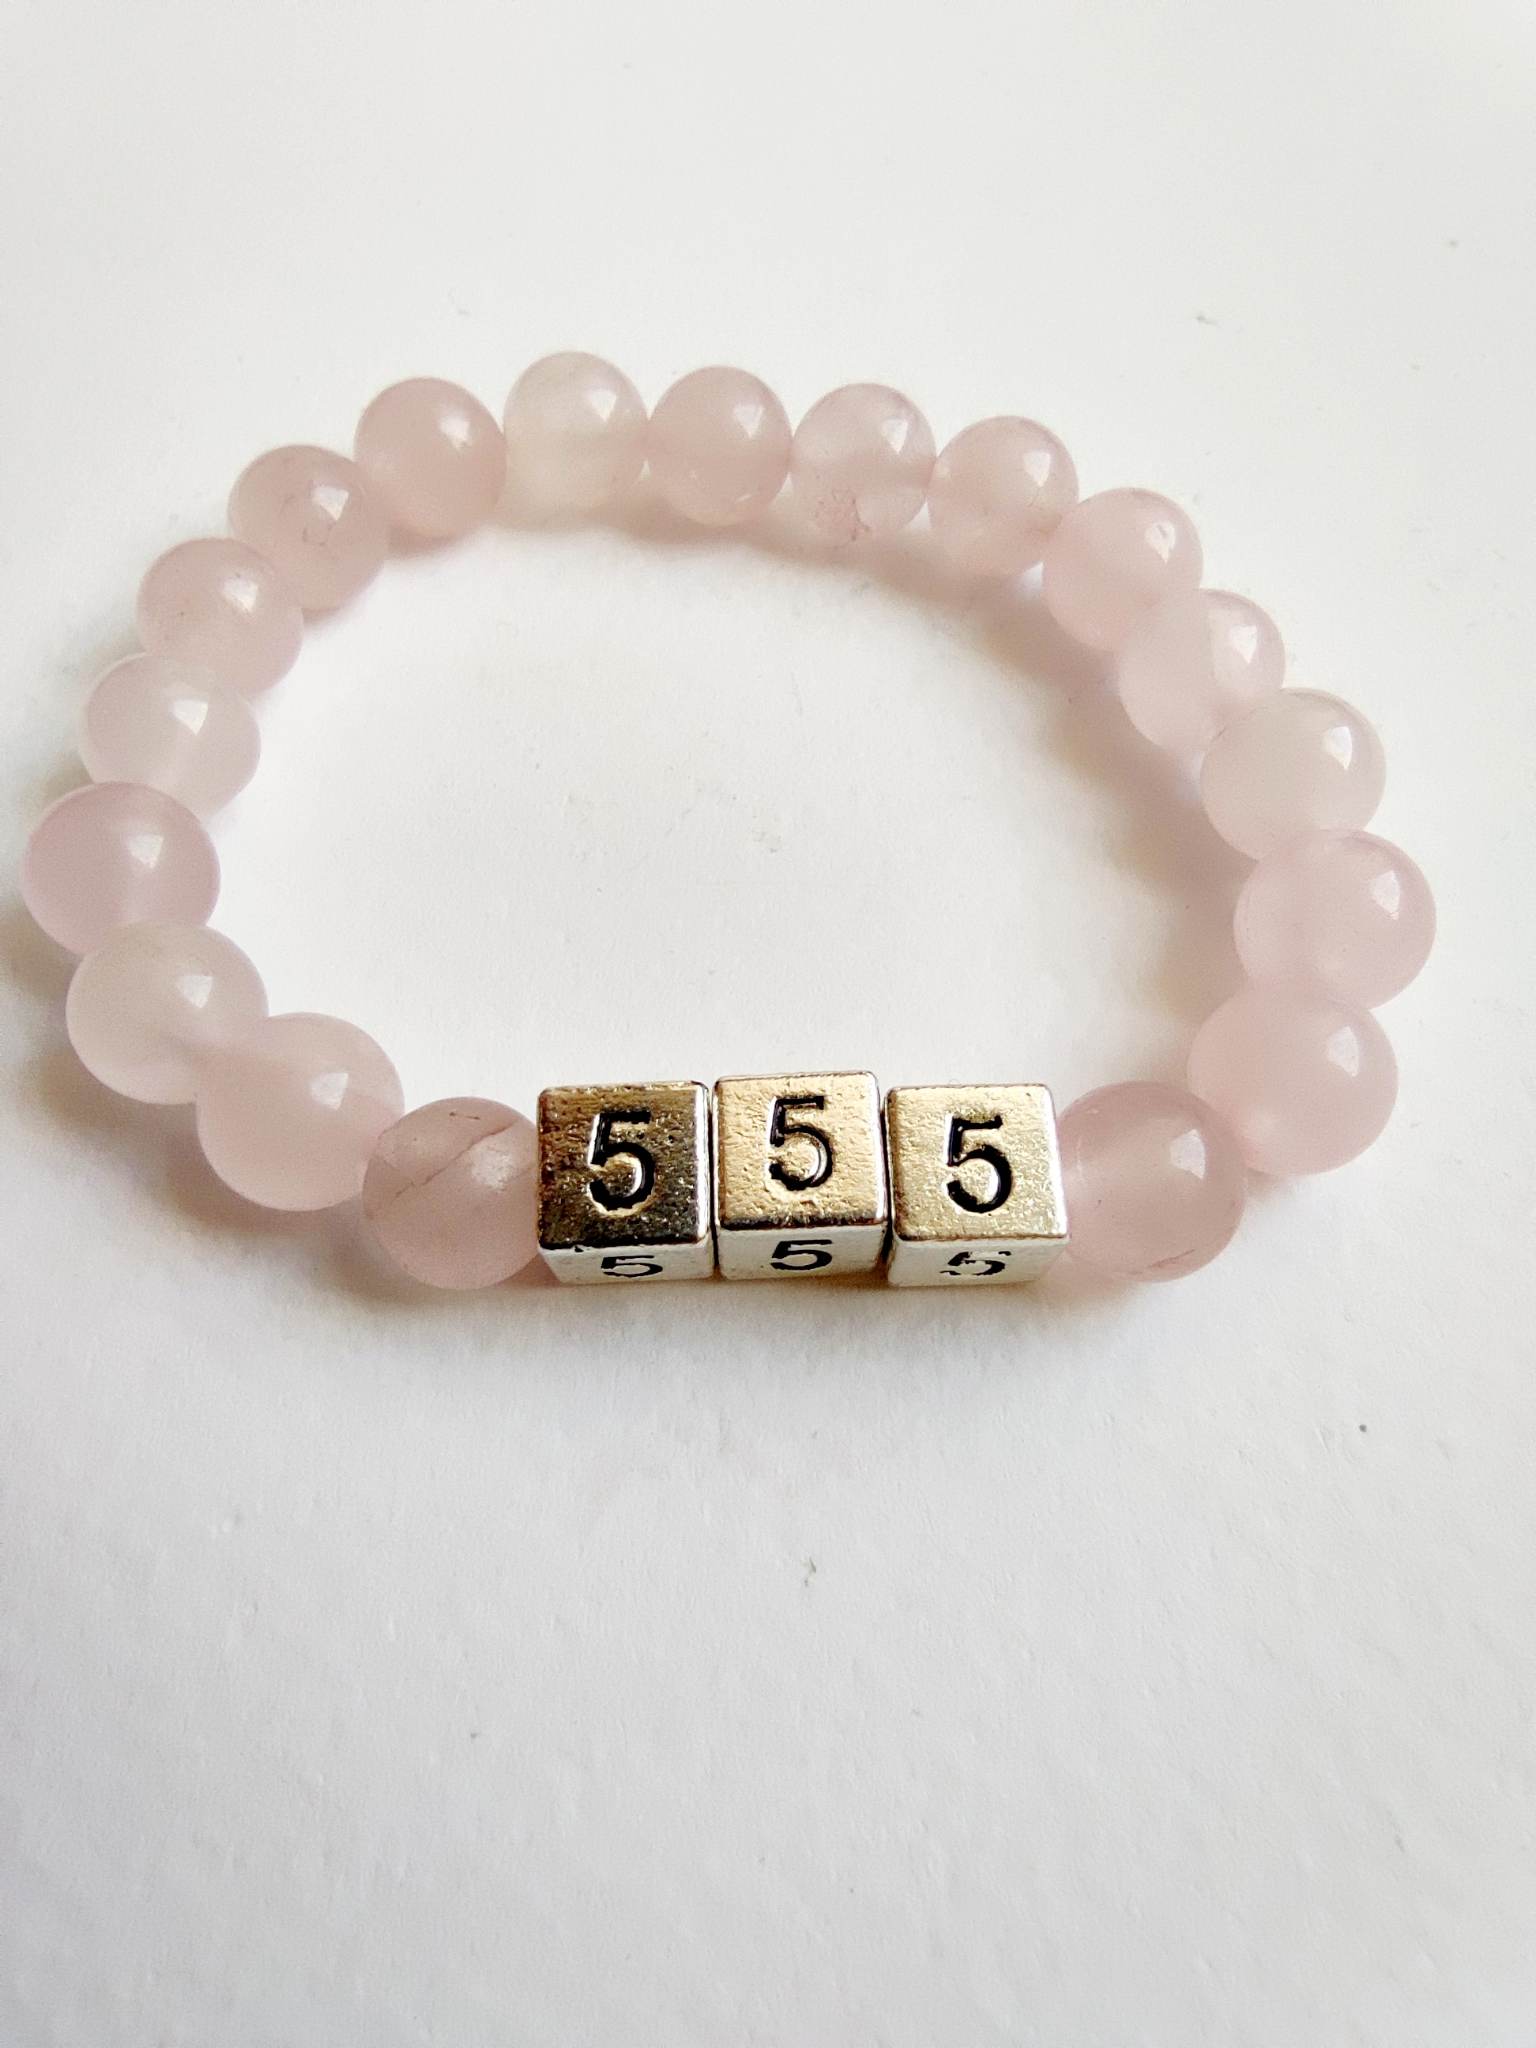 Bratara cu numarul de inger 555 cu cuart roz pentru a atrage dragostea si sufletul pereche